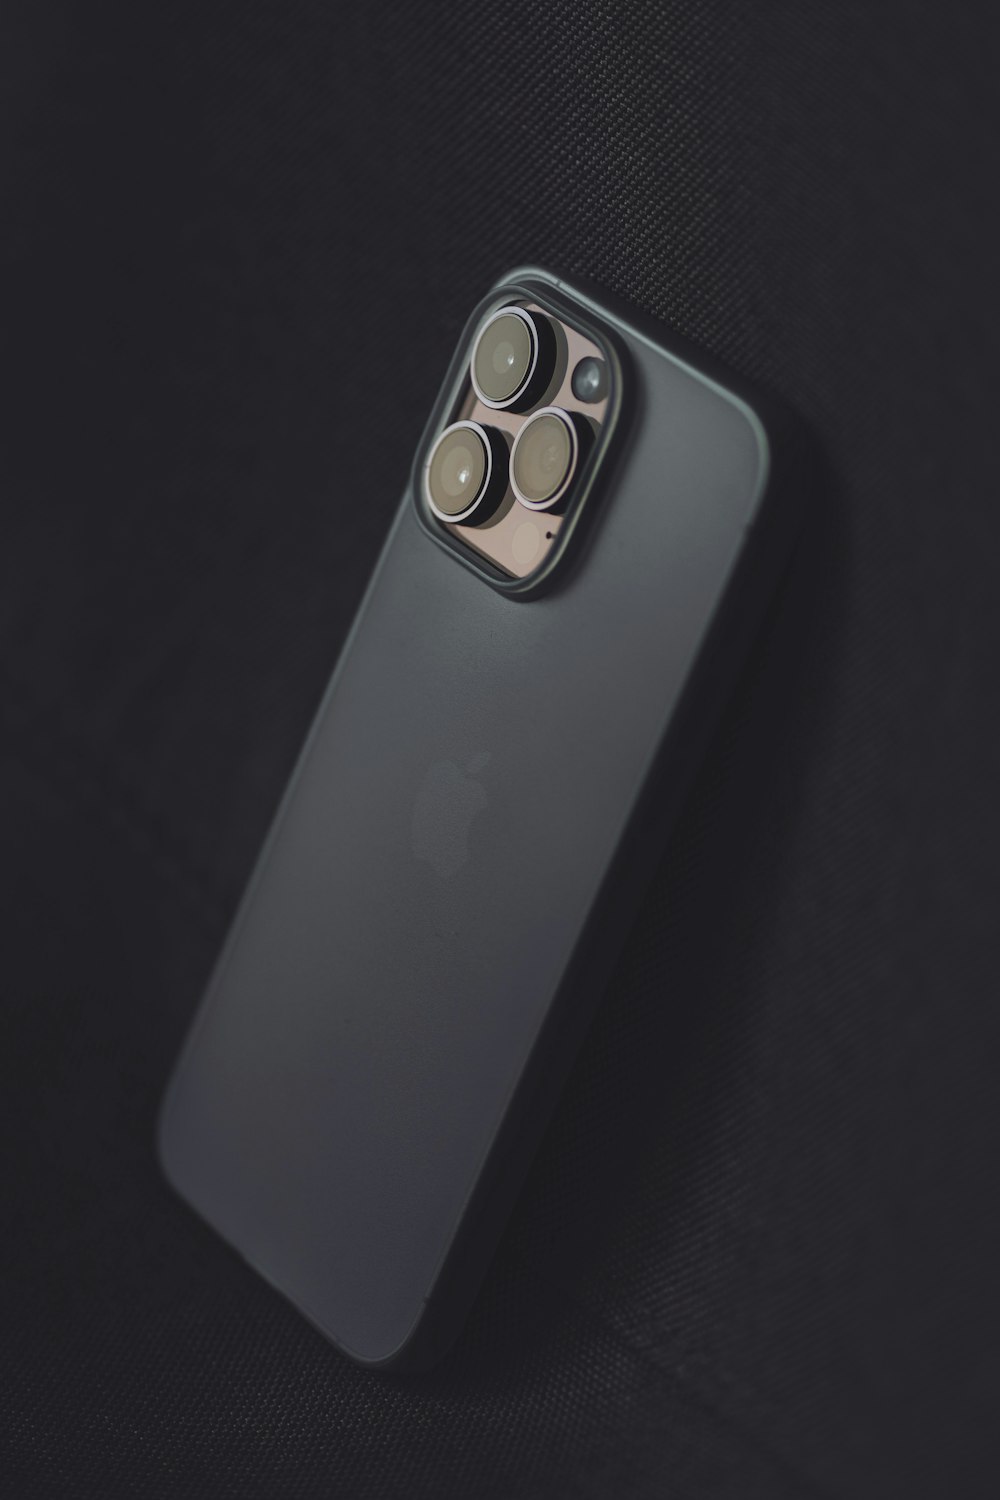 La parte posterior de un iPhone 11 Pro con una cámara conectada